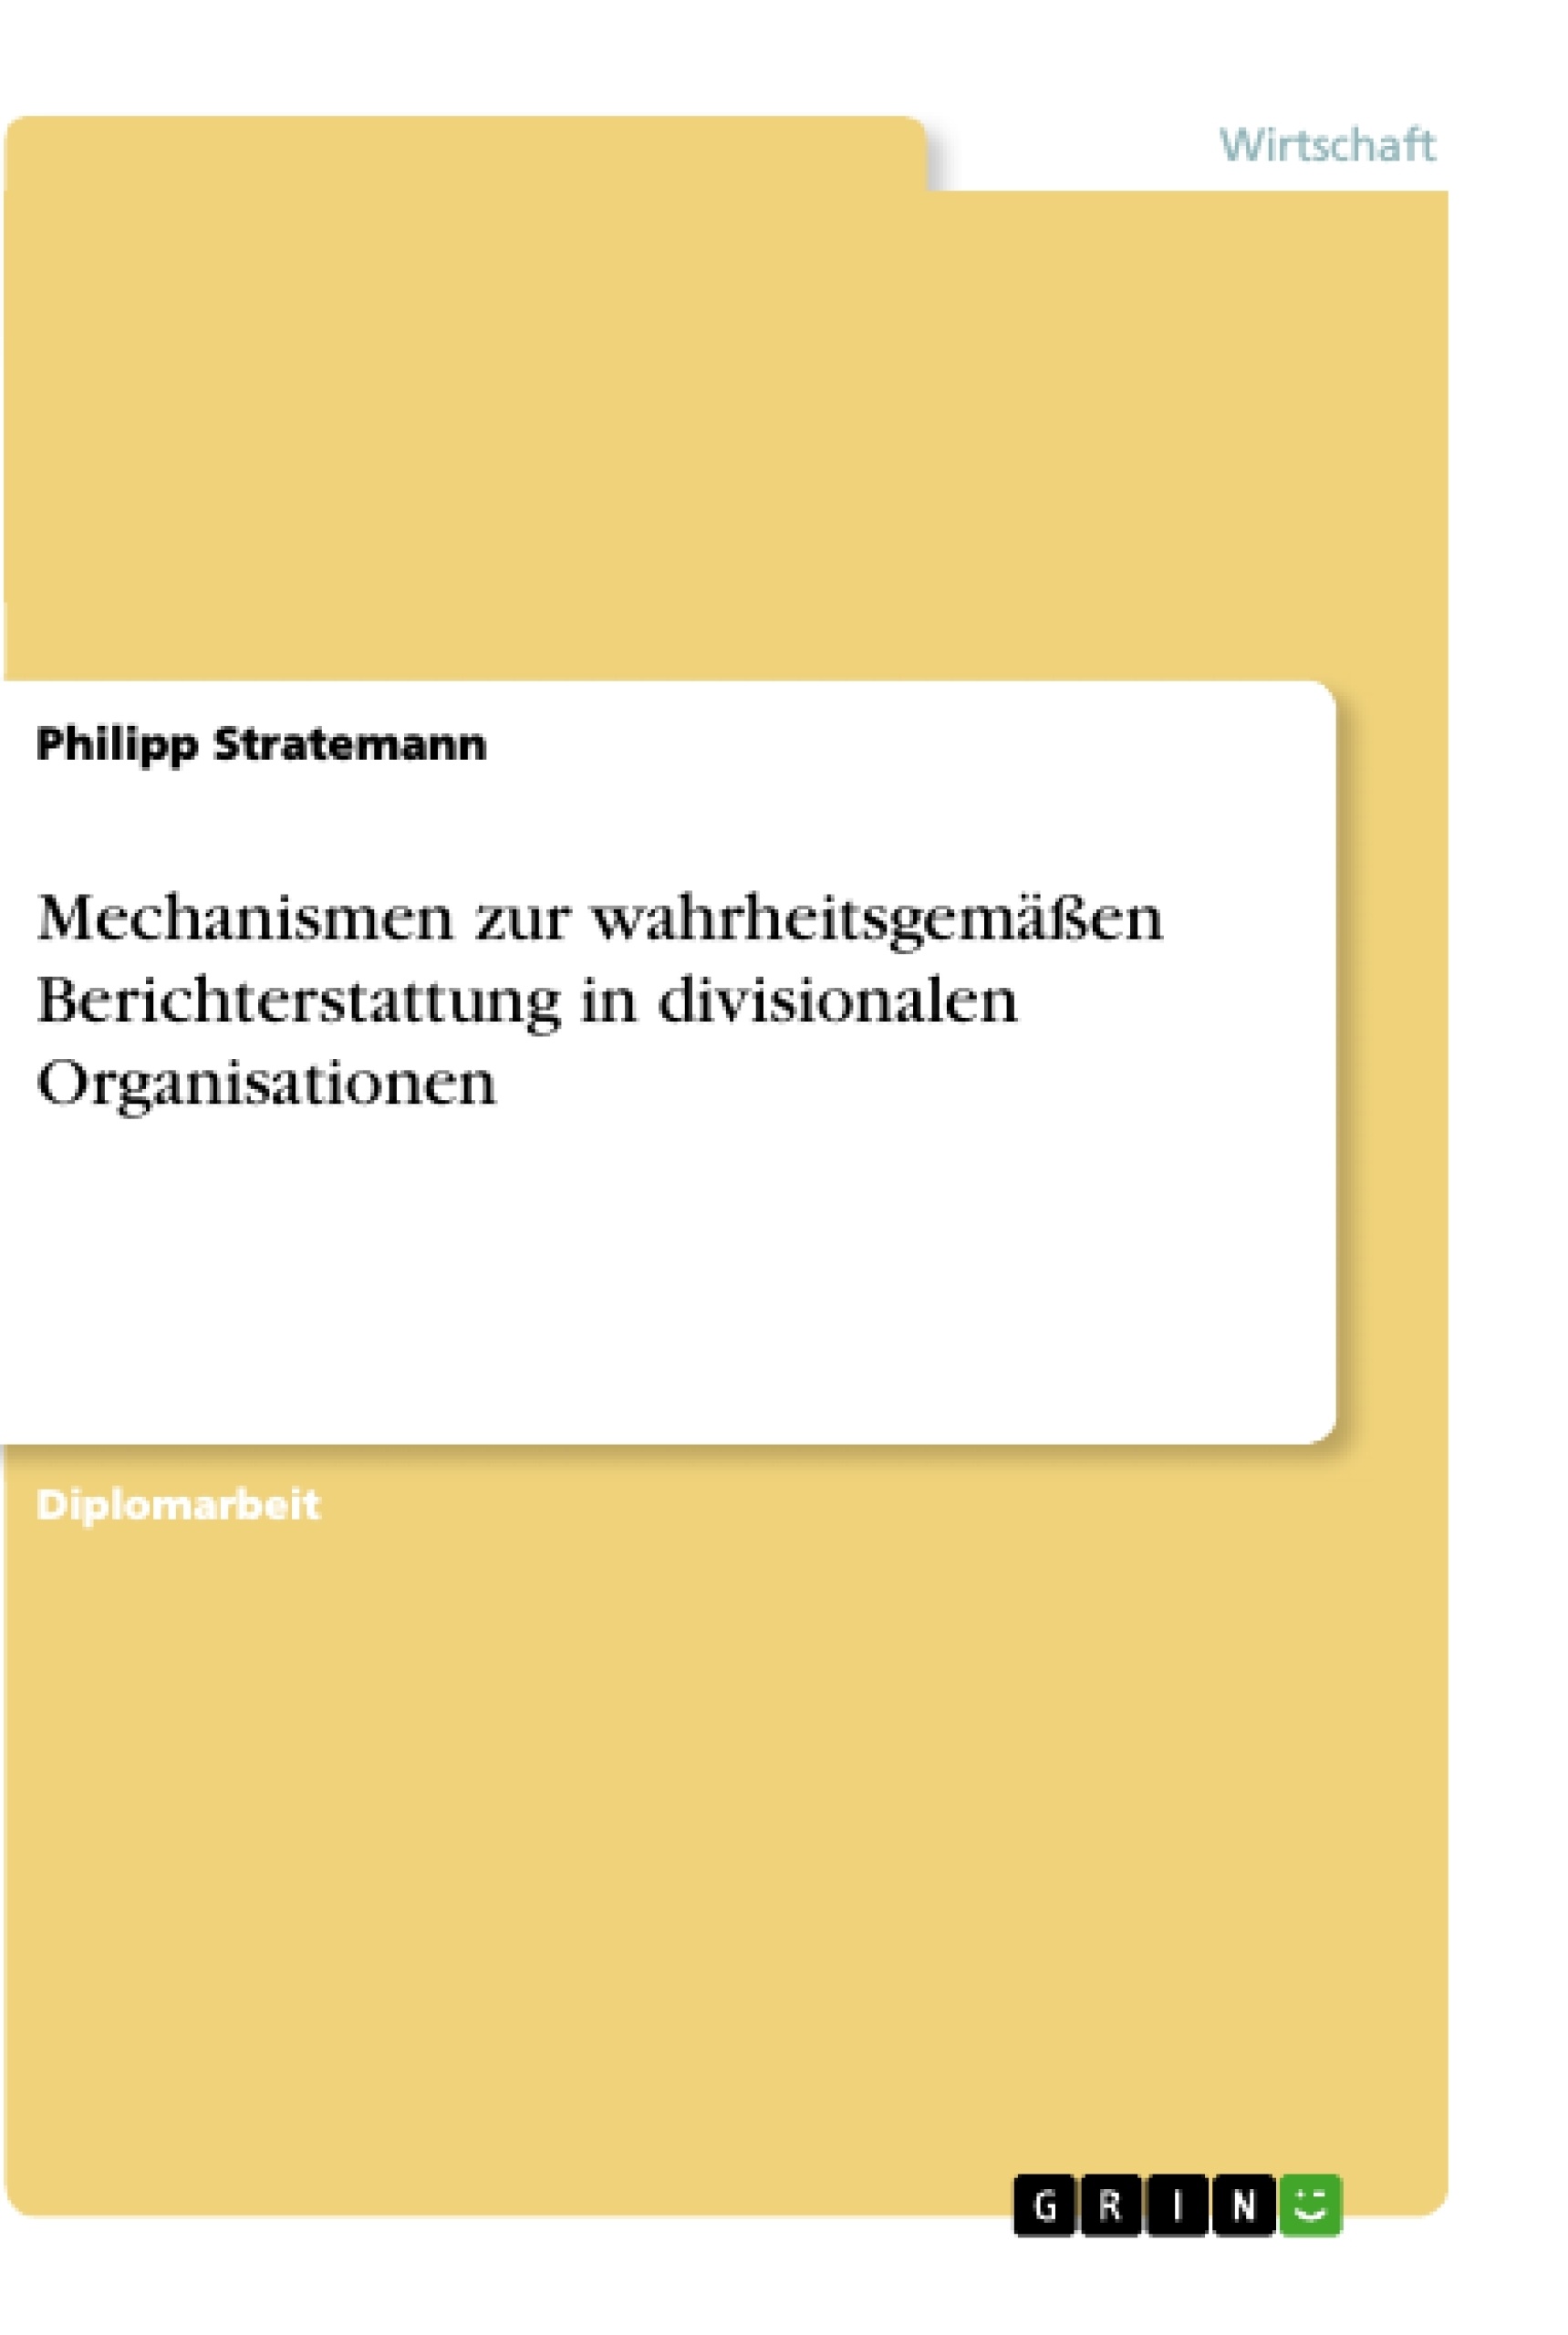 Título: Mechanismen zur wahrheitsgemäßen Berichterstattung in divisionalen Organisationen